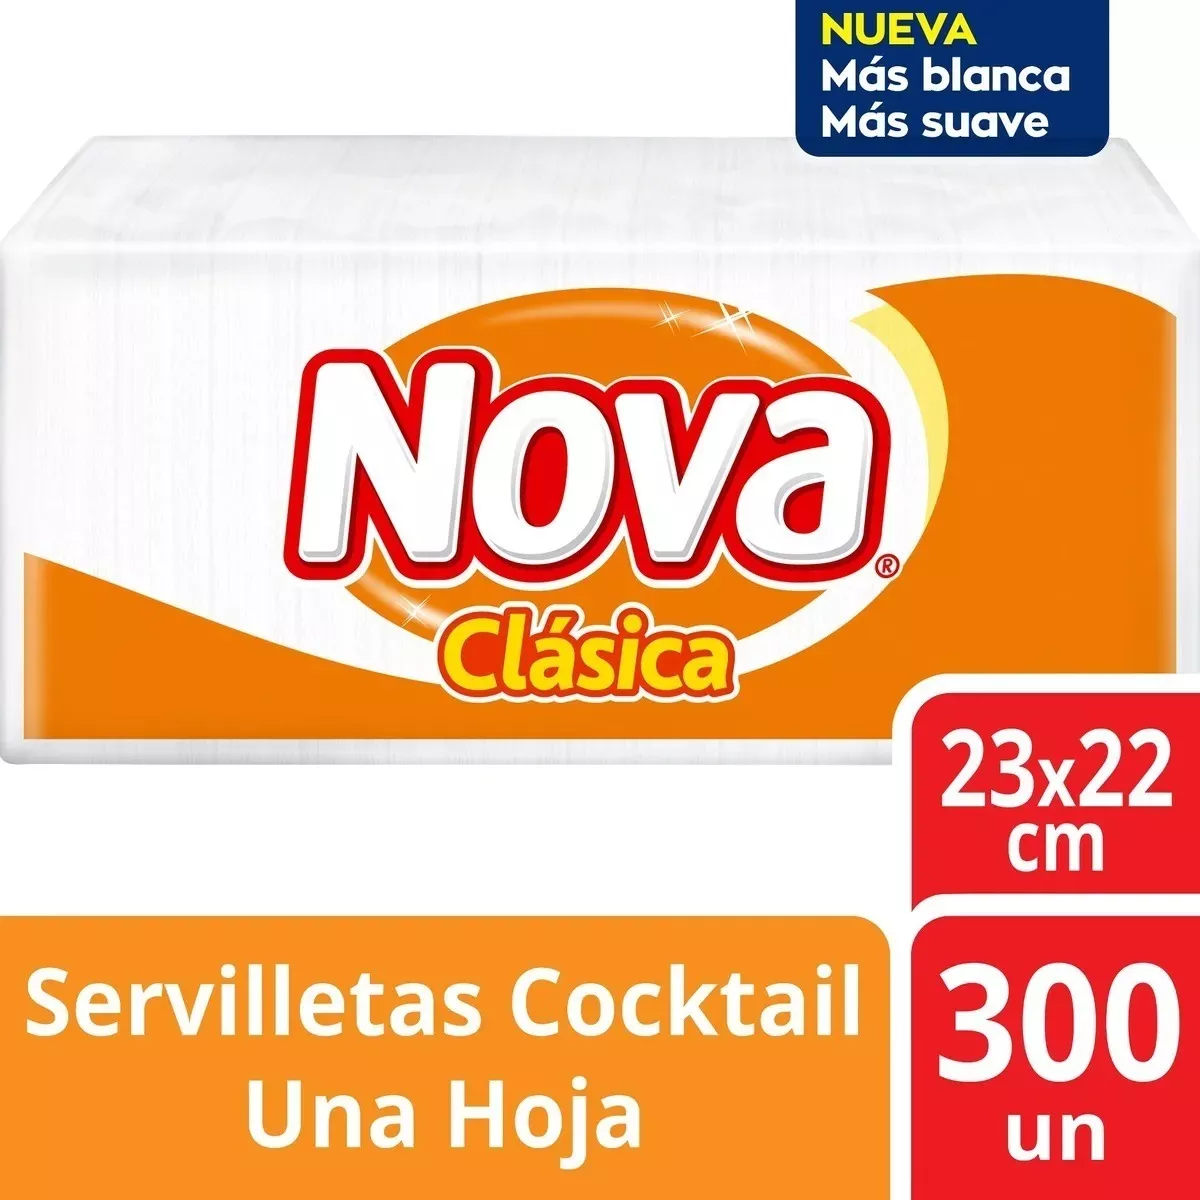 Servilletas Nova Clásica Pack Familiar Cóctel 300 Un